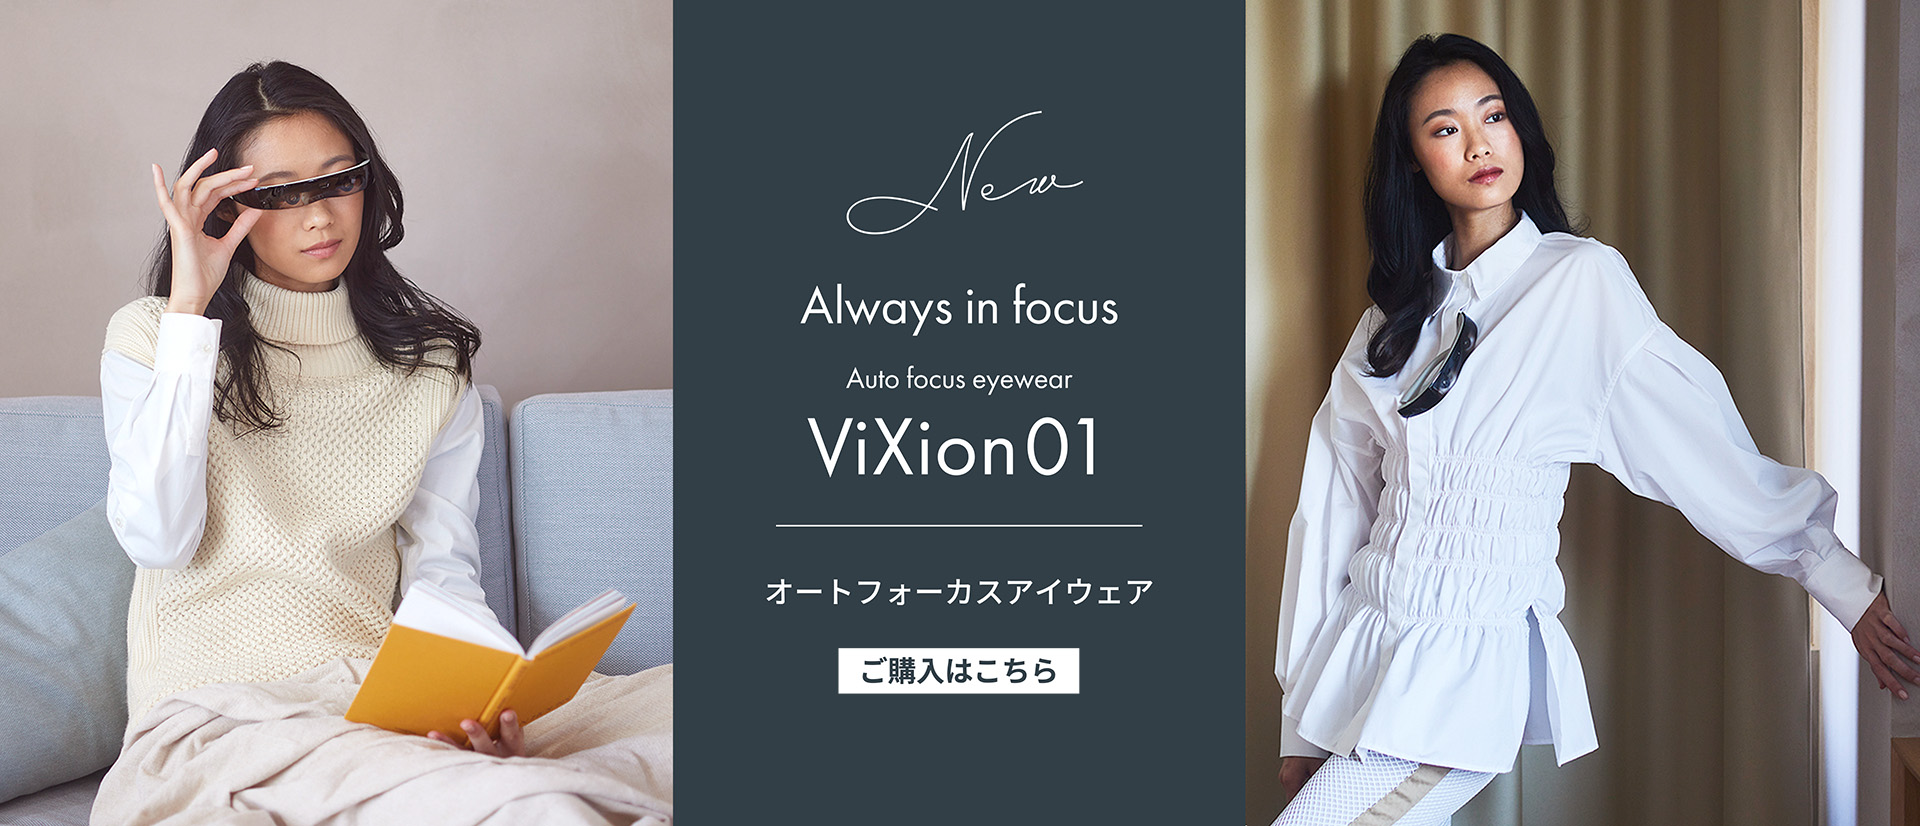 ViXion01 How to use & specs | ViXion Inc.